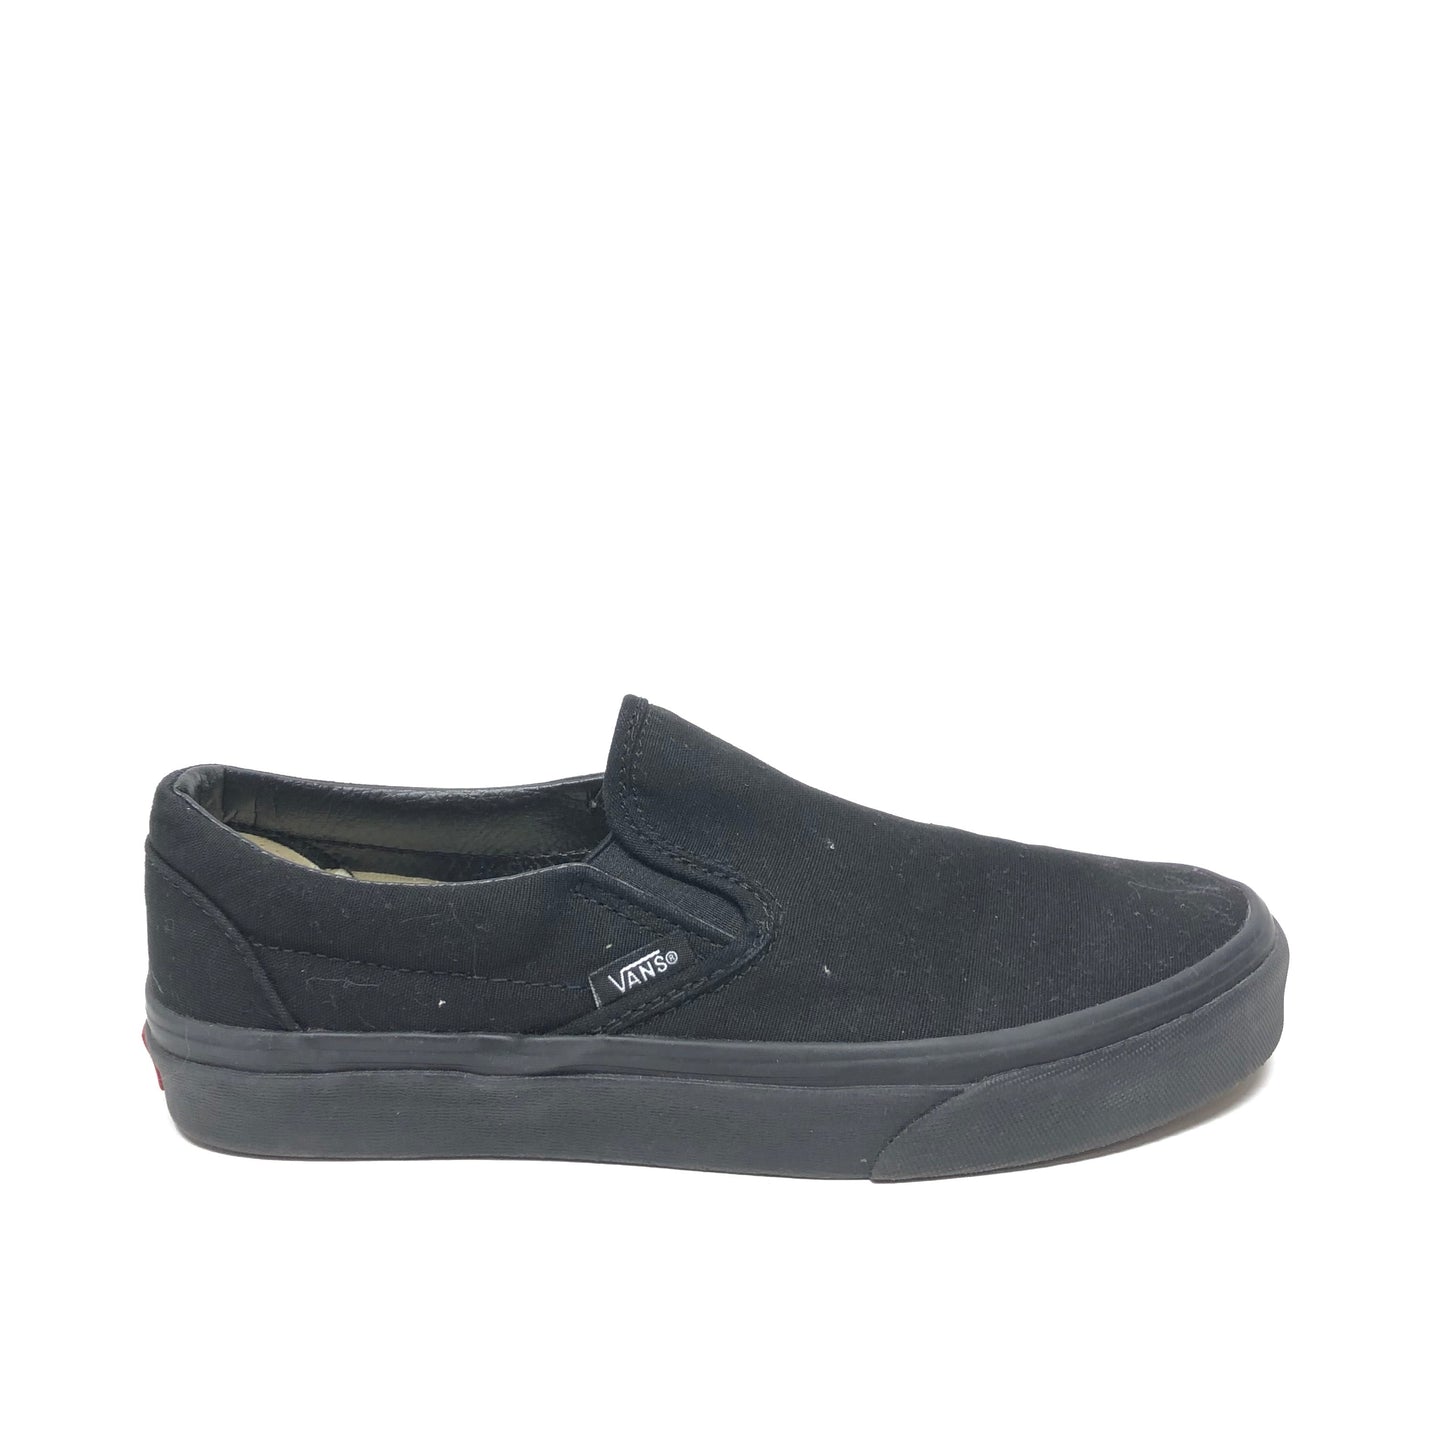 Black Shoes Flats Vans, Size 7.5